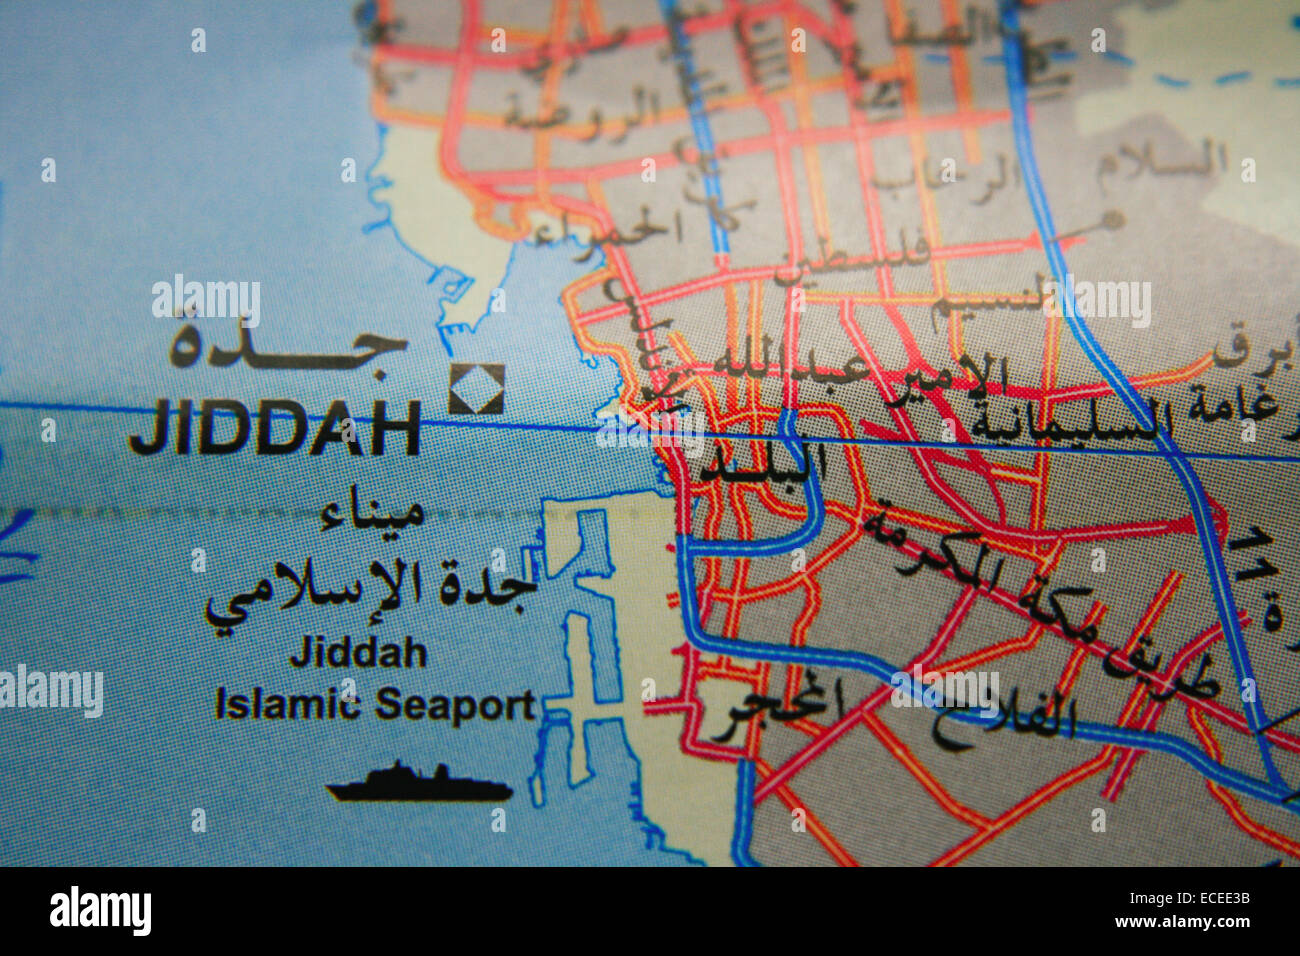 Jeddah map in Kingdom of Saudi Arabia Stock Photo